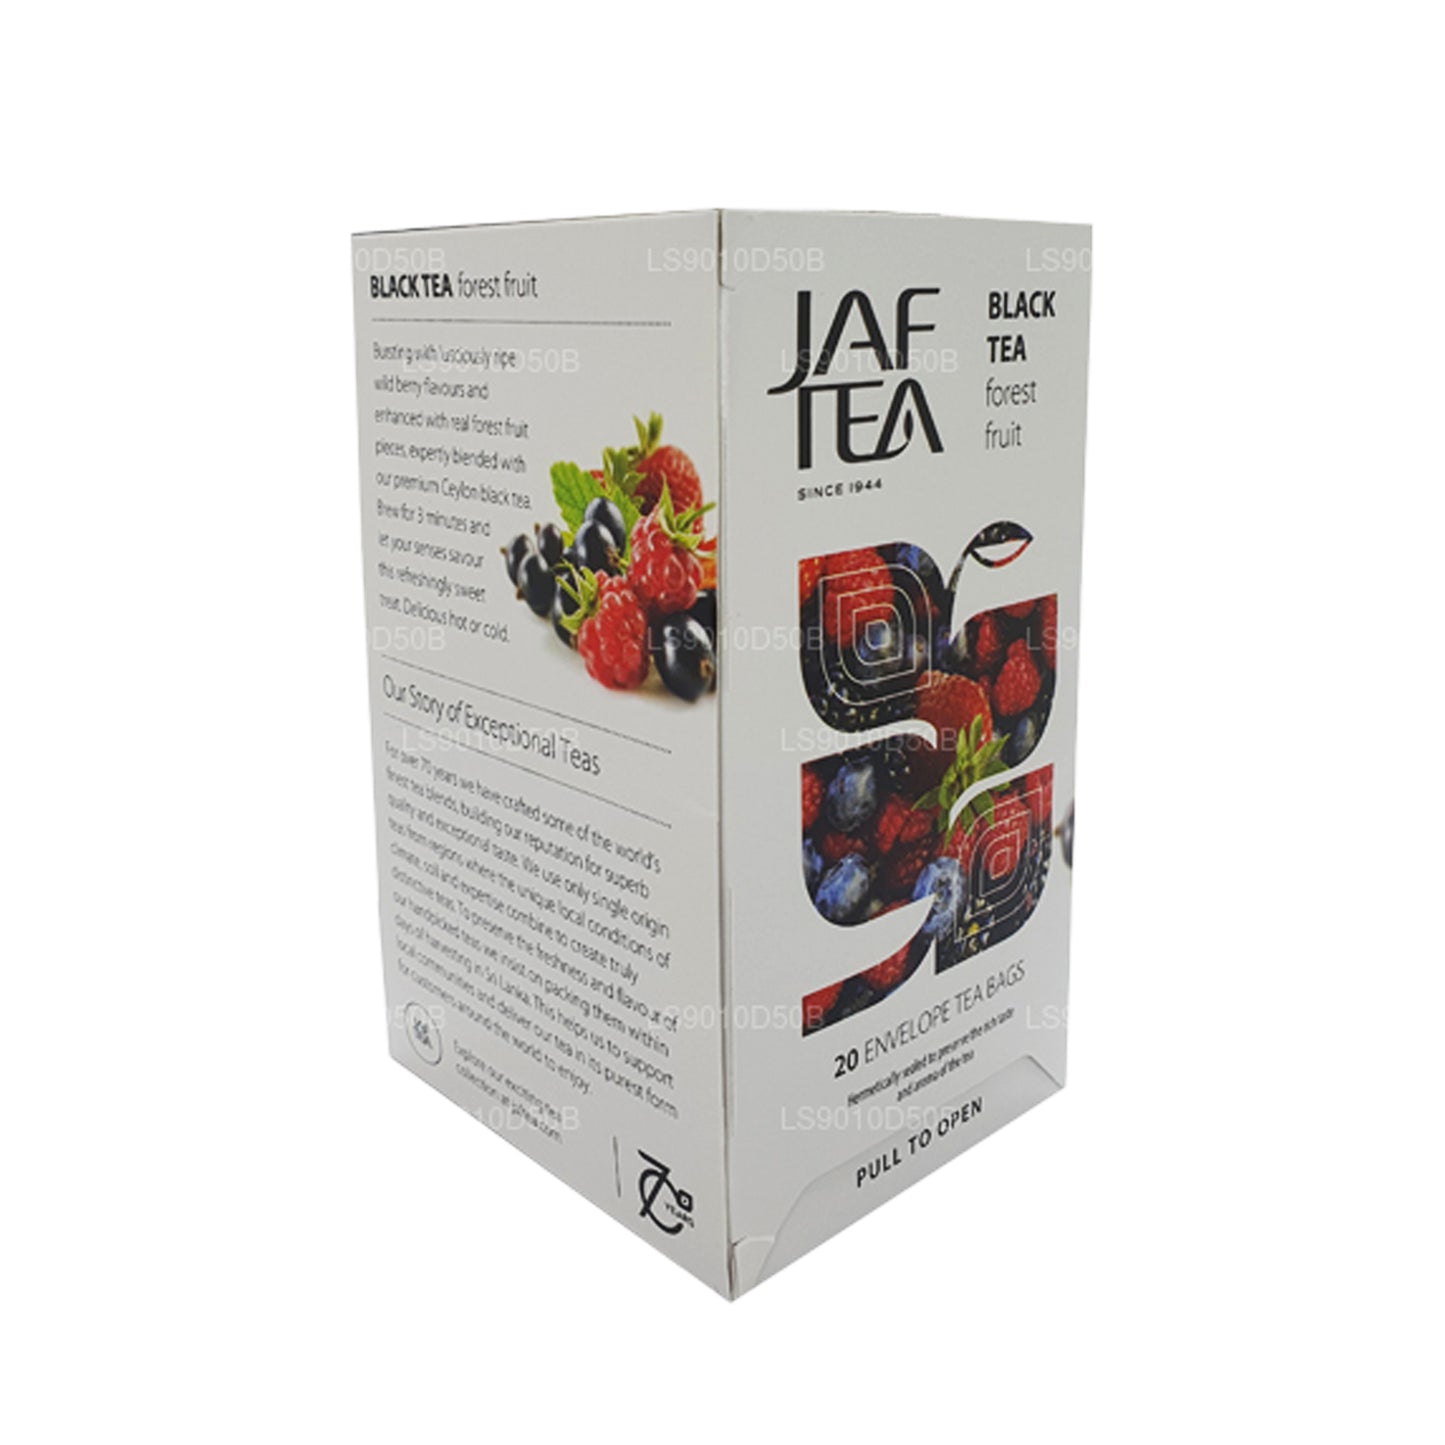 Jaf Tea Pure Fruits Collection Black Tea Forest Fruit Foil Envelop Tea Bags (30g)